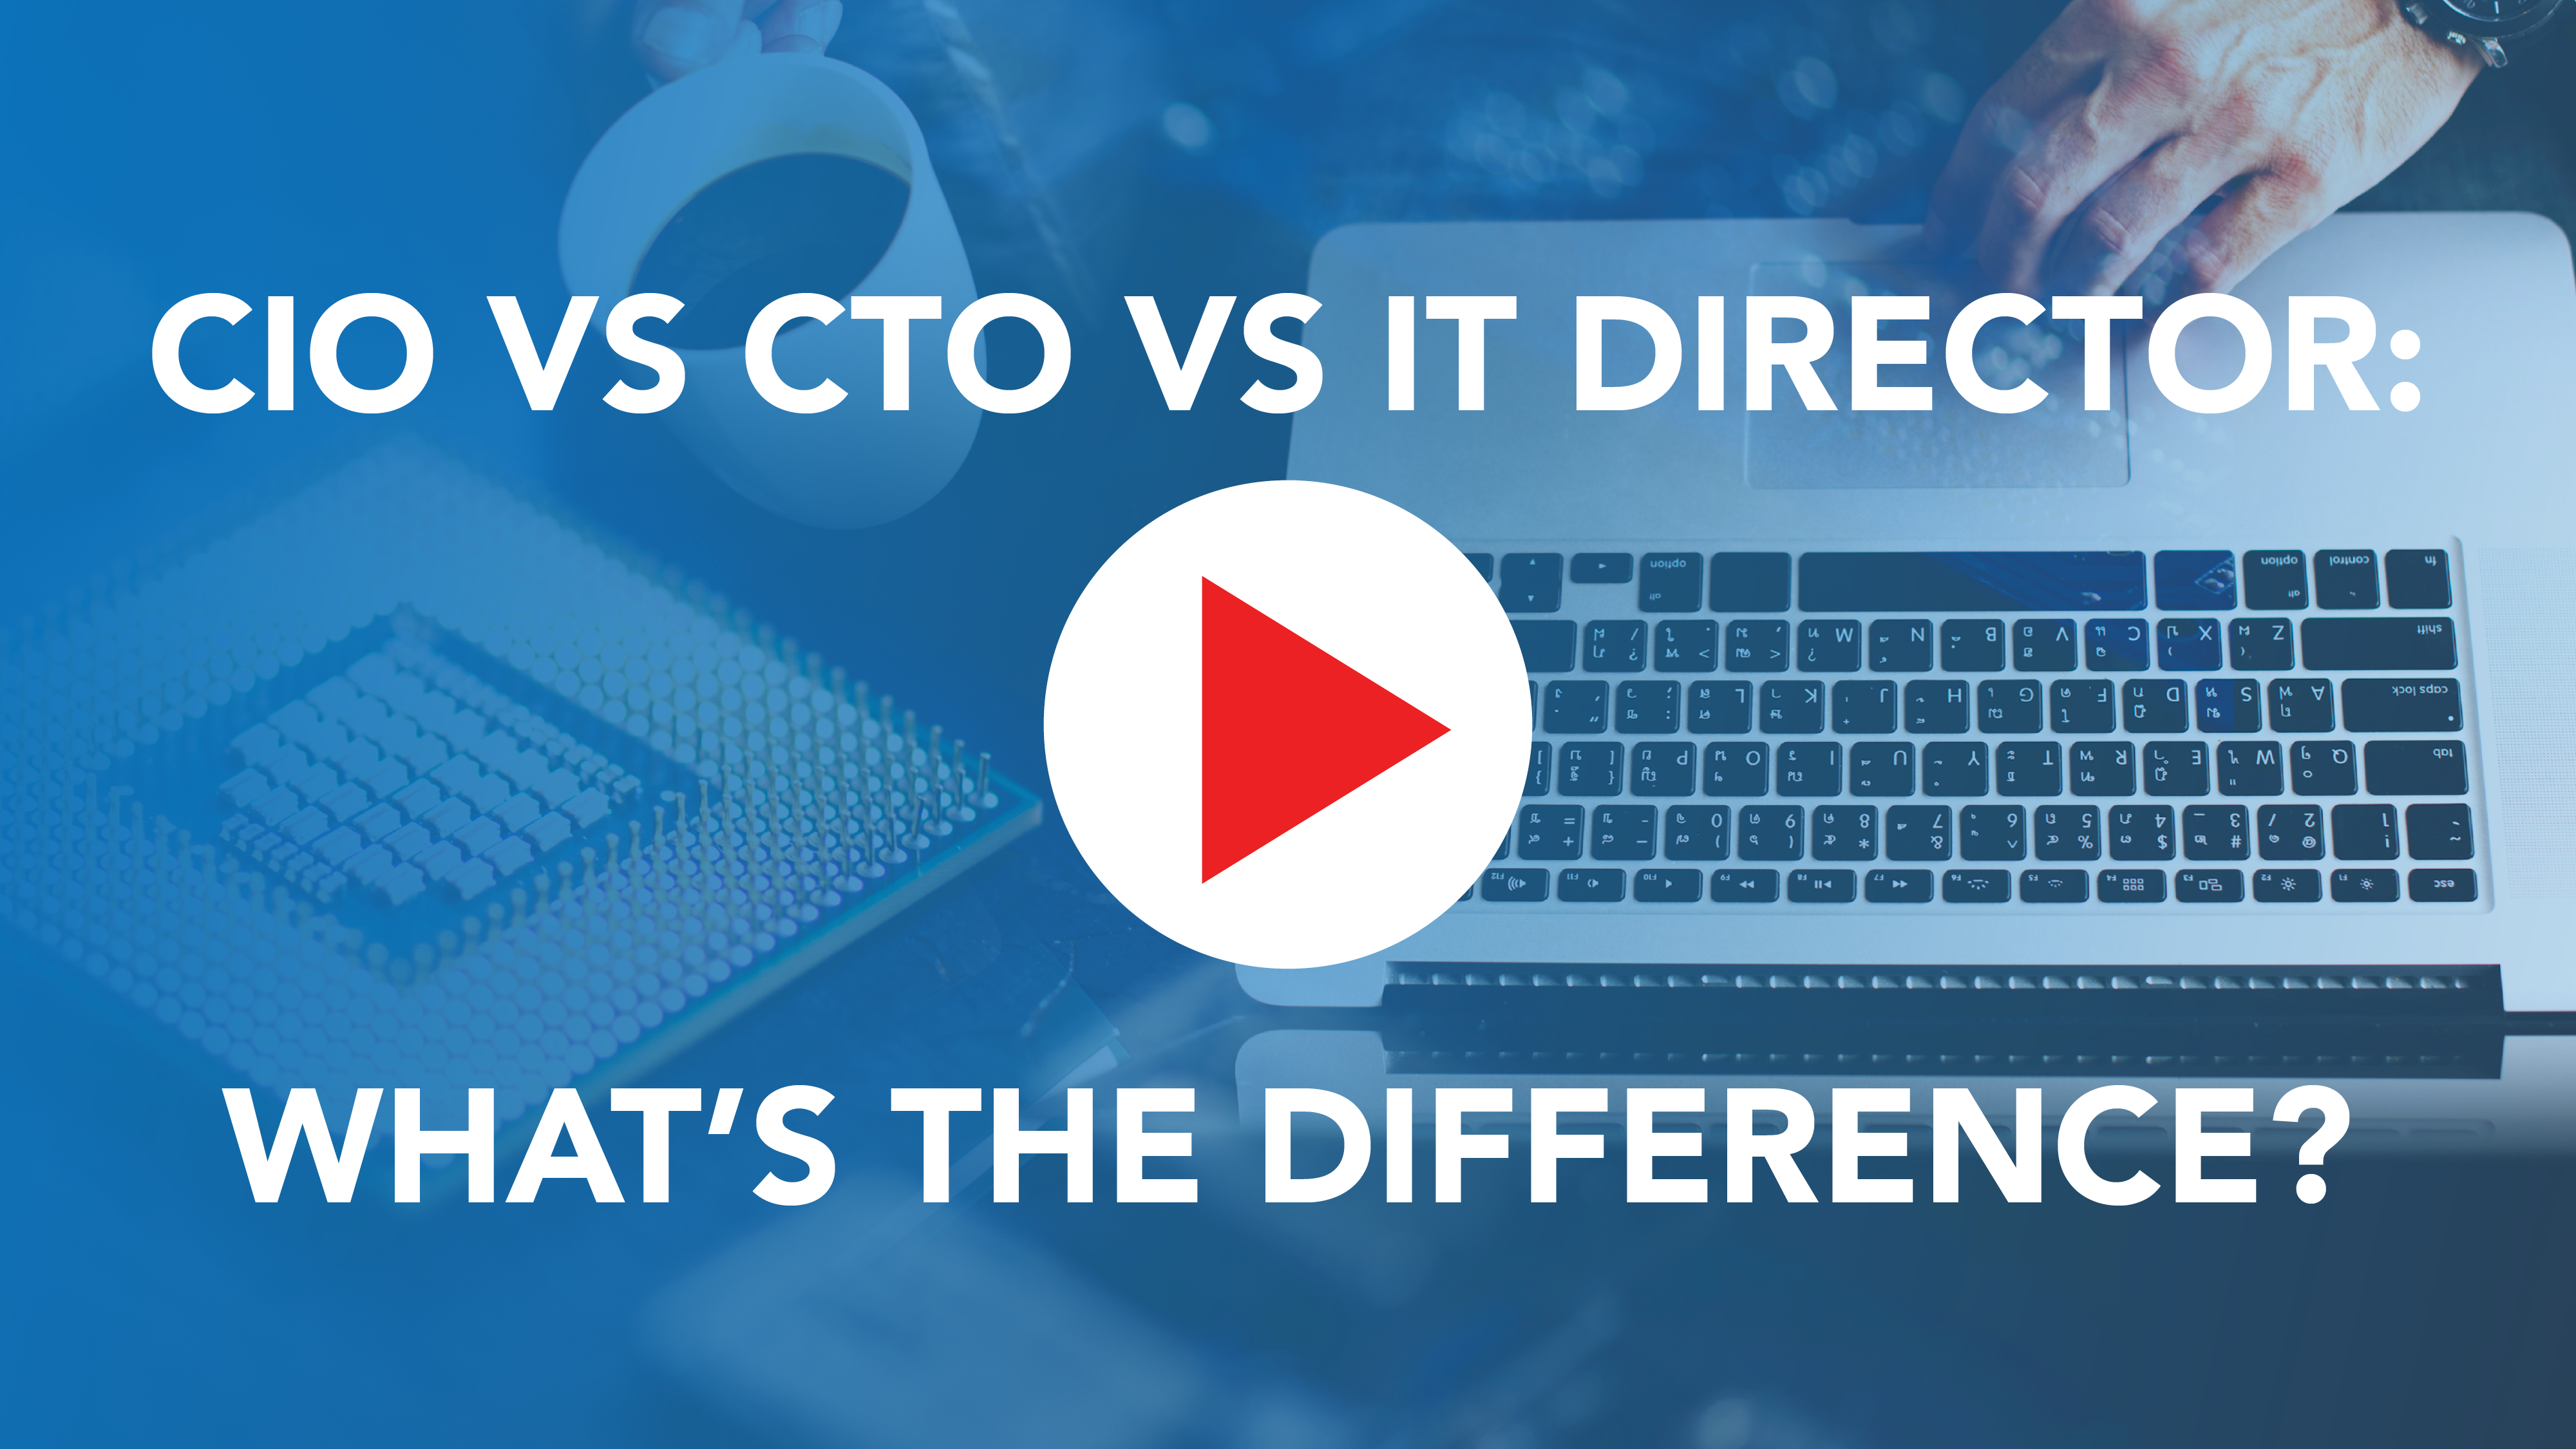 CIO vs CTO vs IT Director: What’s the difference?